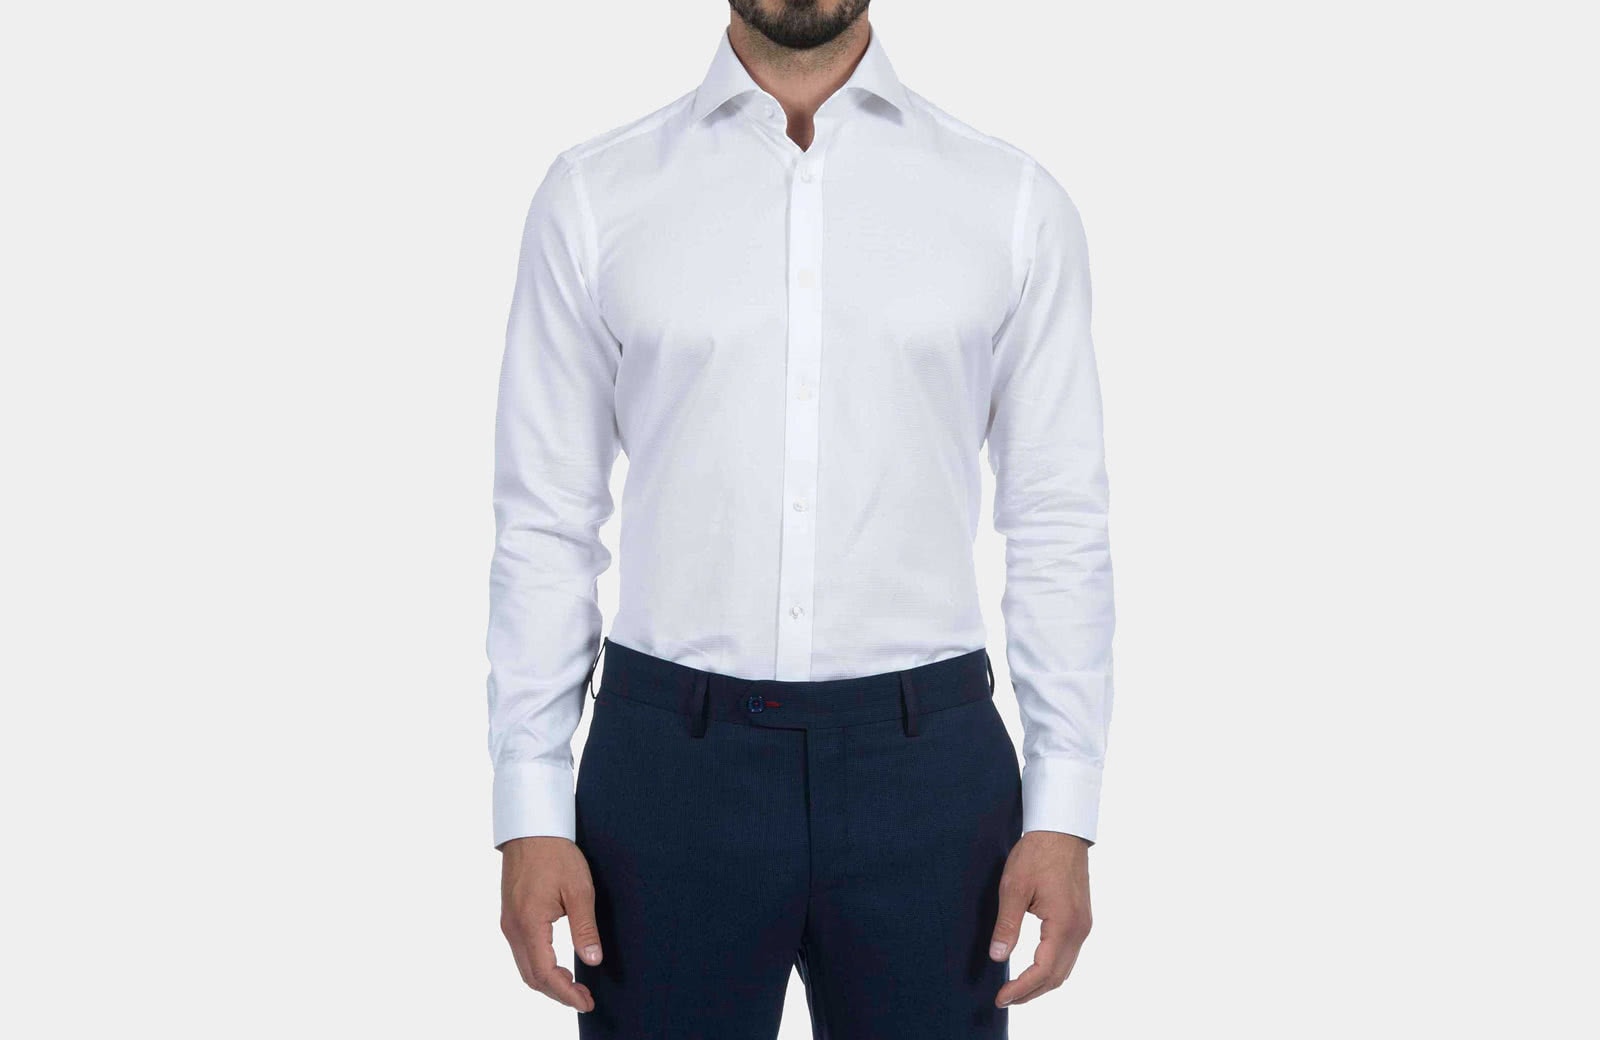 Robert Graham best men summer dress shirt white - Luxe Digital